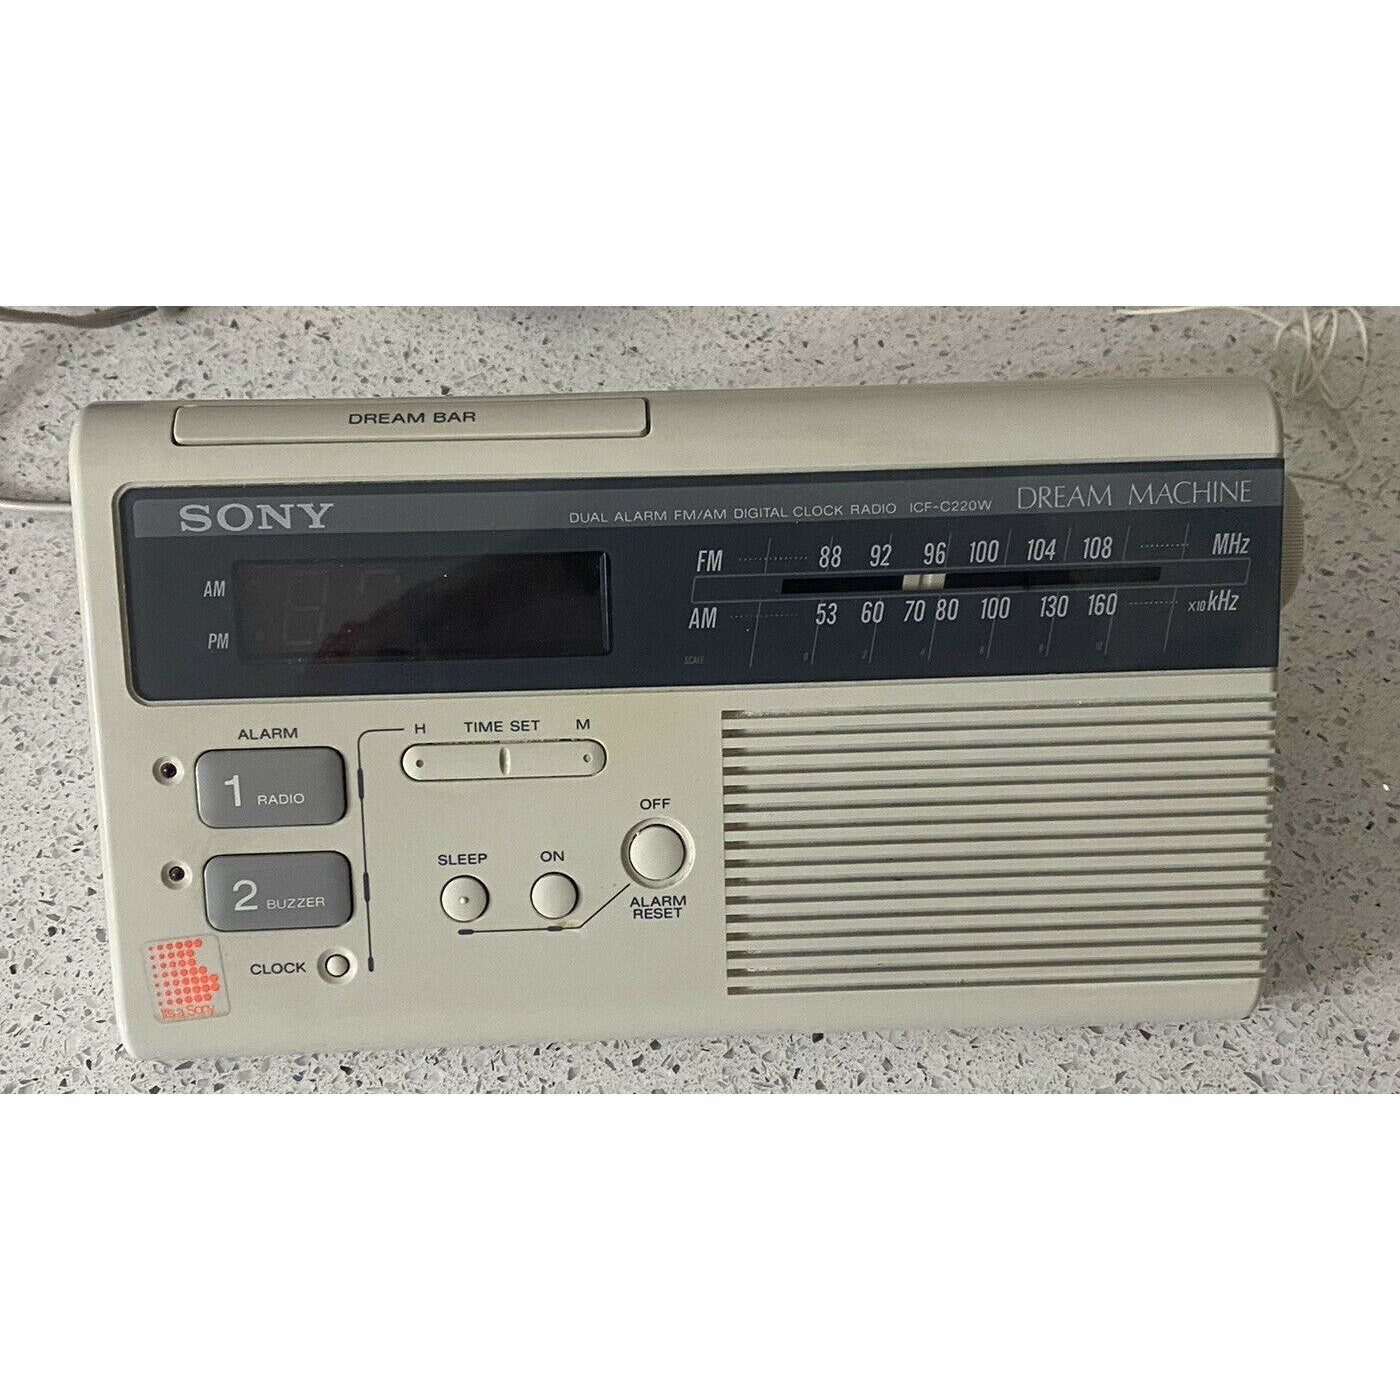 Sony Dream Machine ICF-C221W Dual Alarm FM/AM Digital Clock Radio 1988